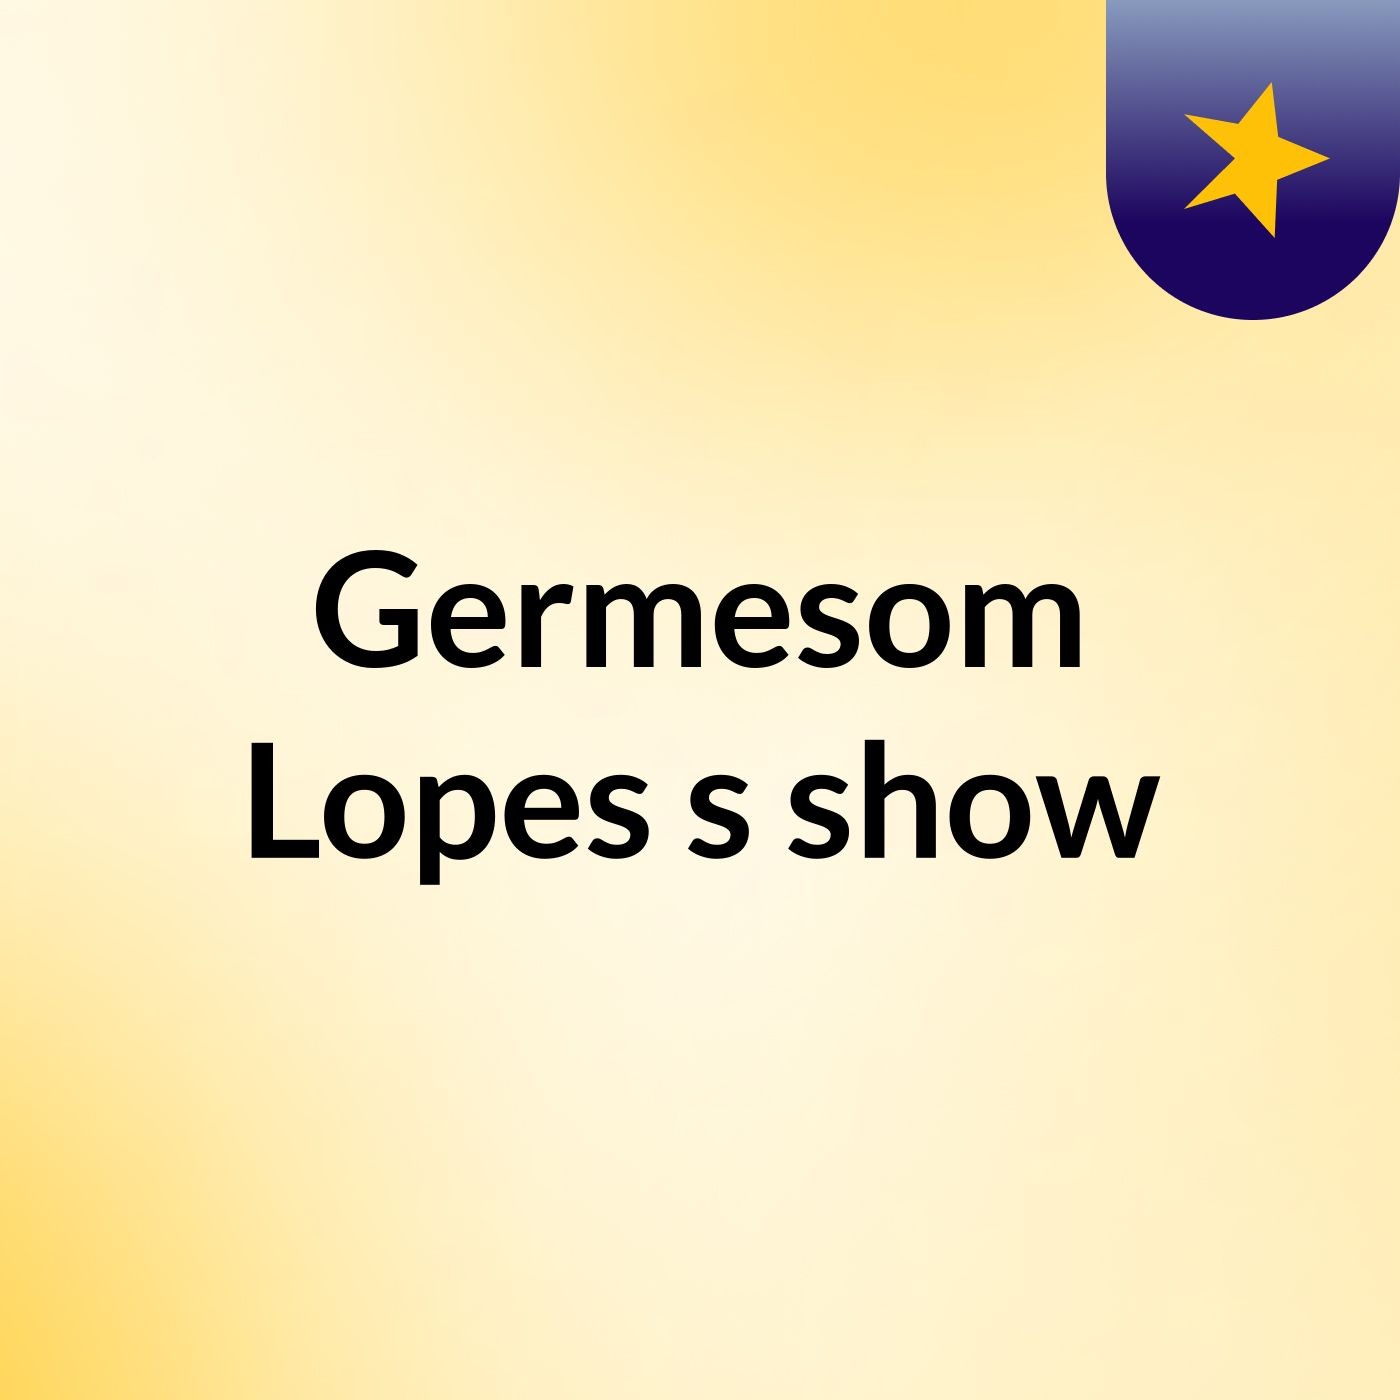 Germesom Lopes's show